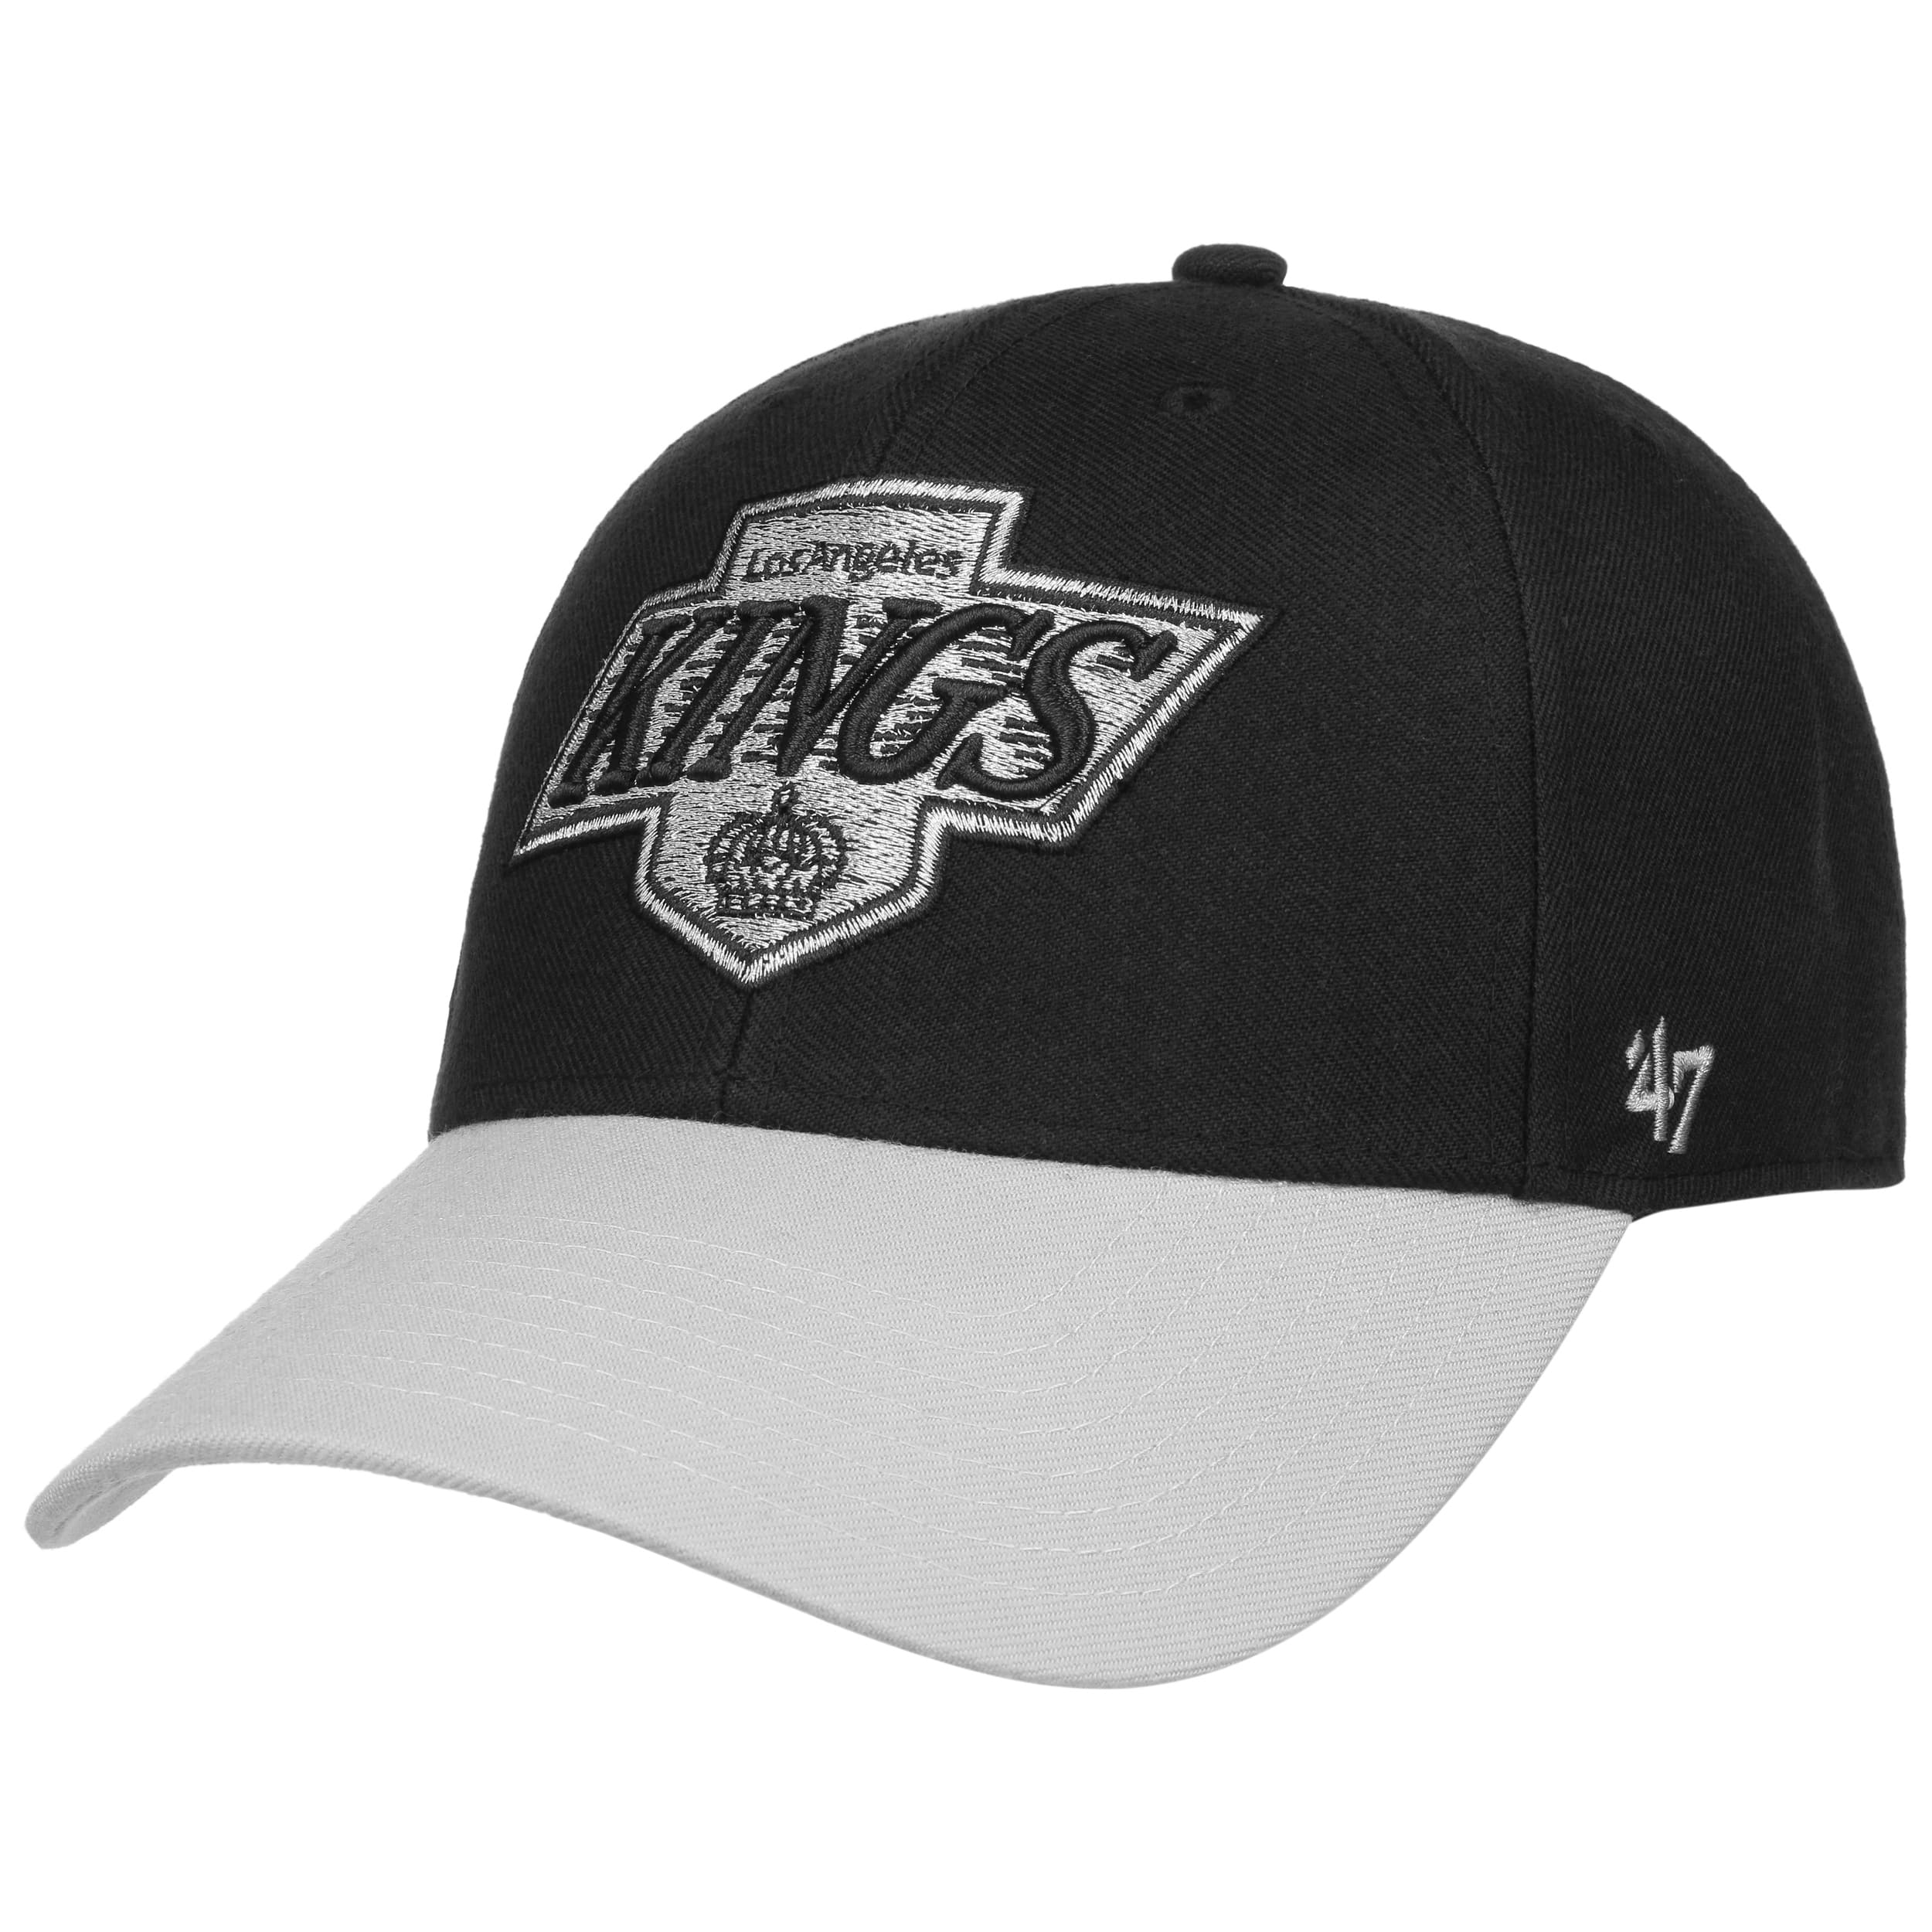 NHL Hats, NHL Snapback, NHL Caps